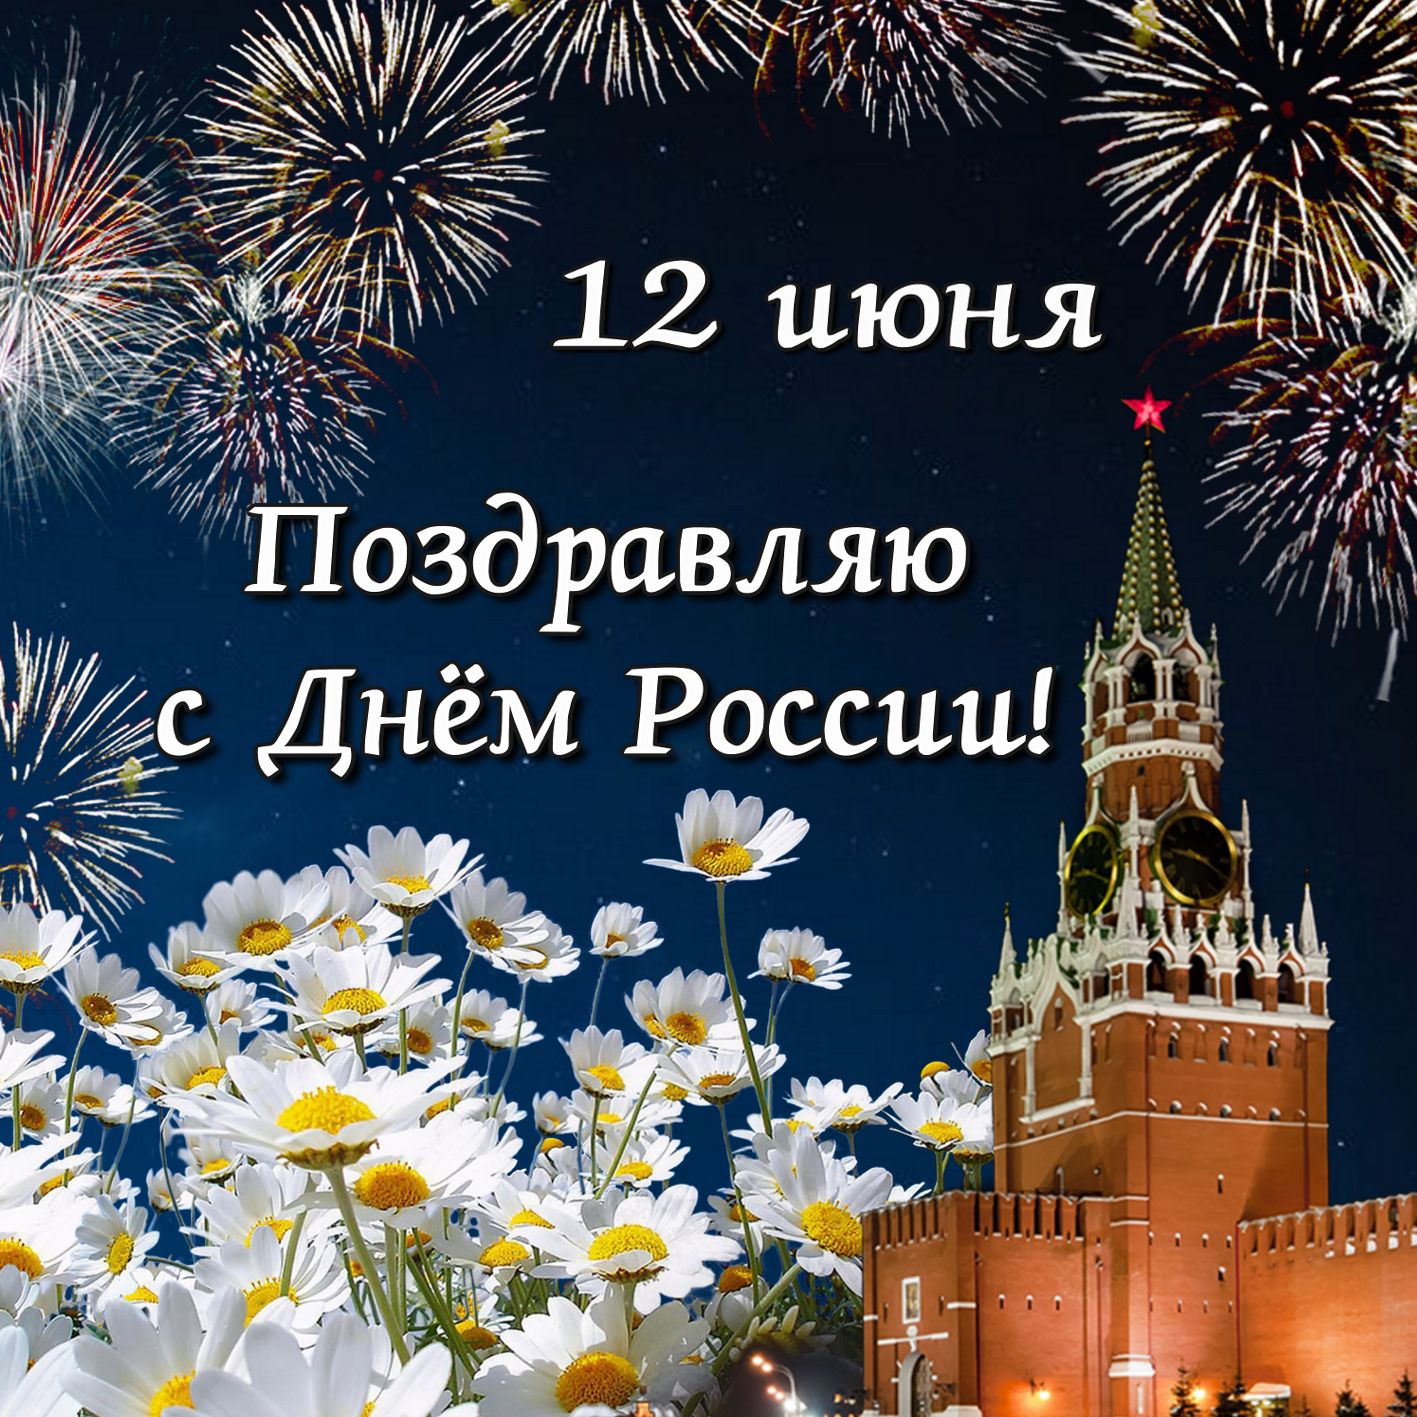 «Поздравительная открытка «С Днем России!» своими руками»